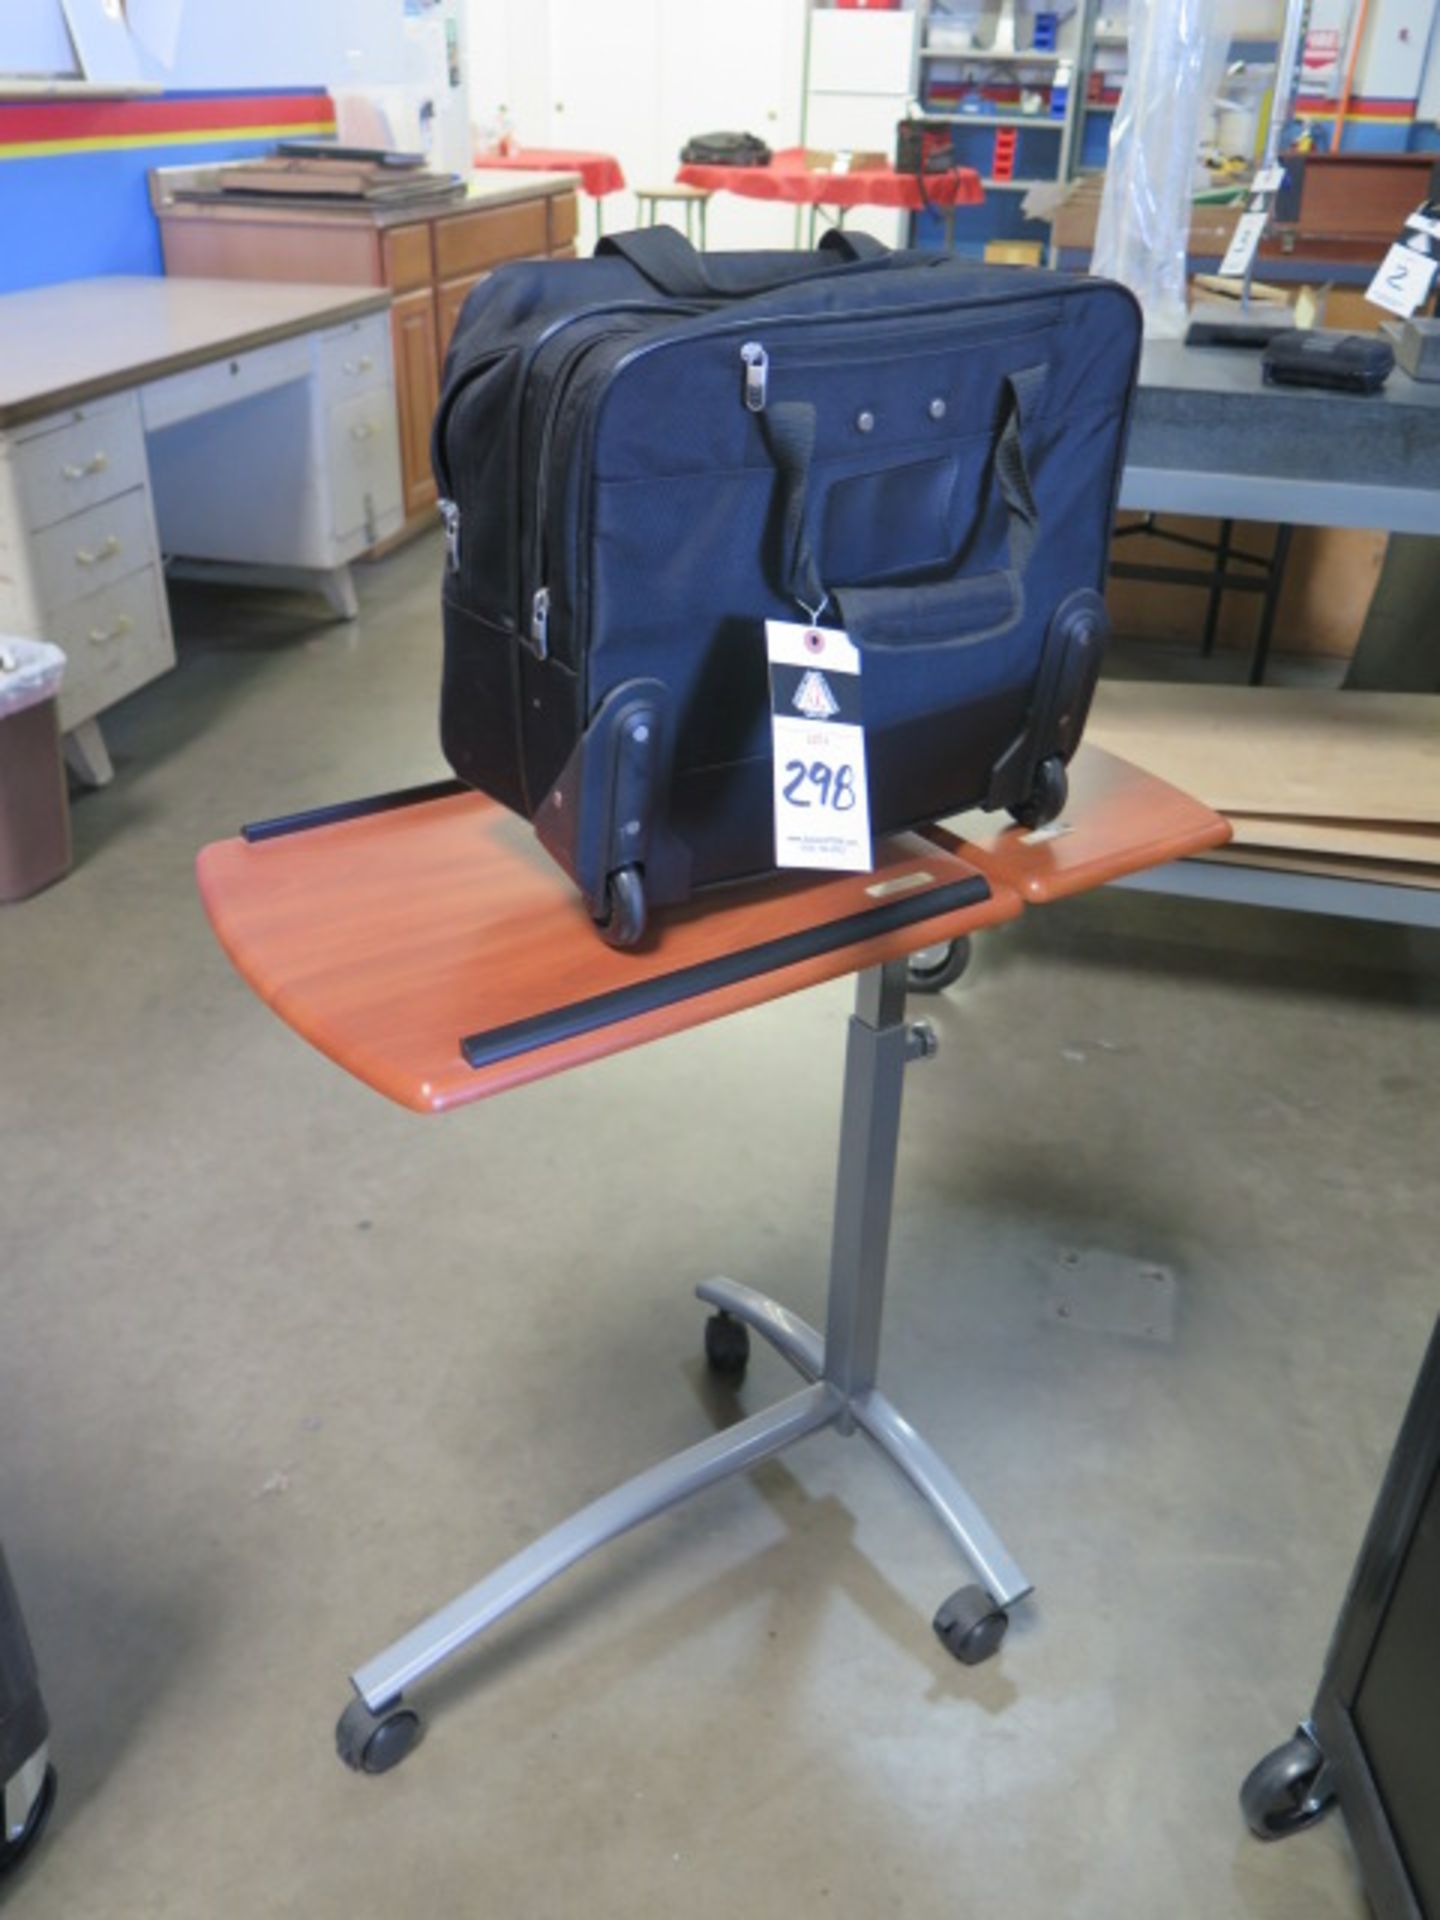 Computer Bag and Cart